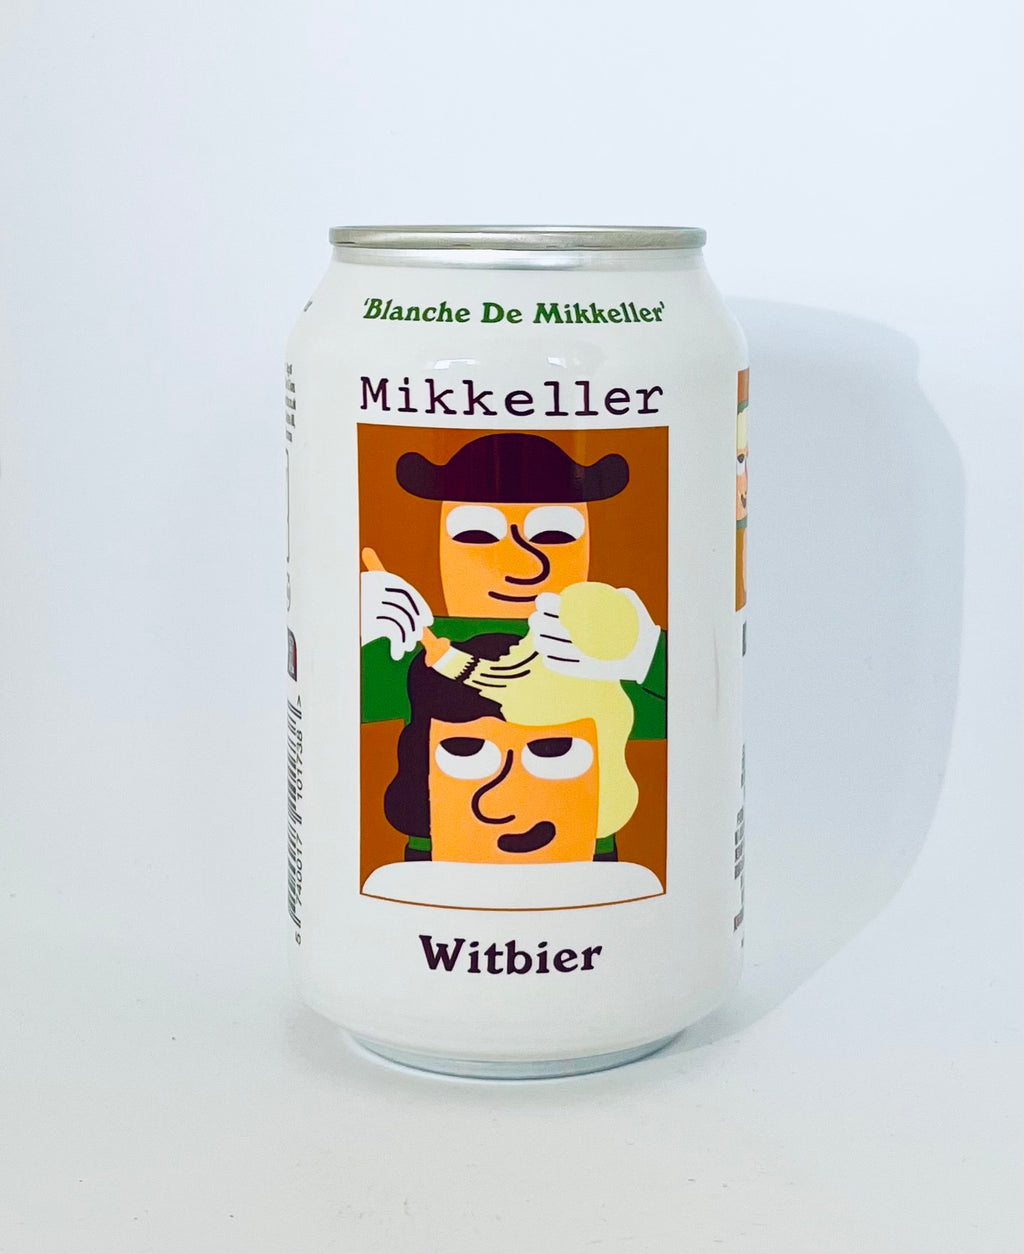 Blanche De Mikkeller Witbier - Mikkeller 5%, 33cl (inkl. pant) (SPAR 9,00 KR)